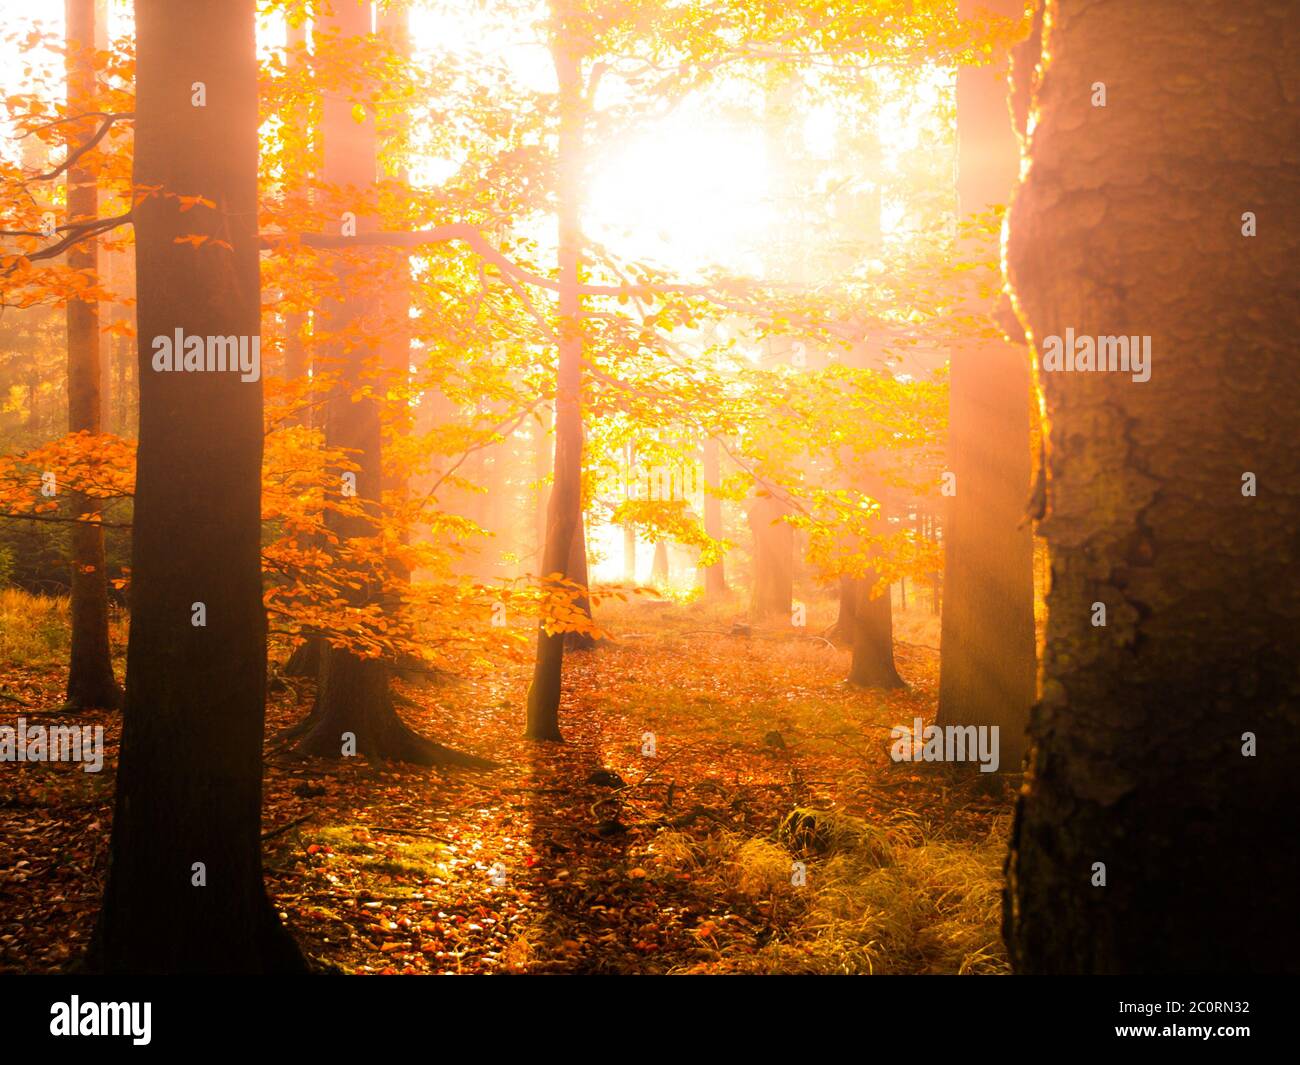 Autunno in faggeta. Splendido paesaggio caldo con i raggi del sole della prima mattina nella foresta autunnale. Foto Stock